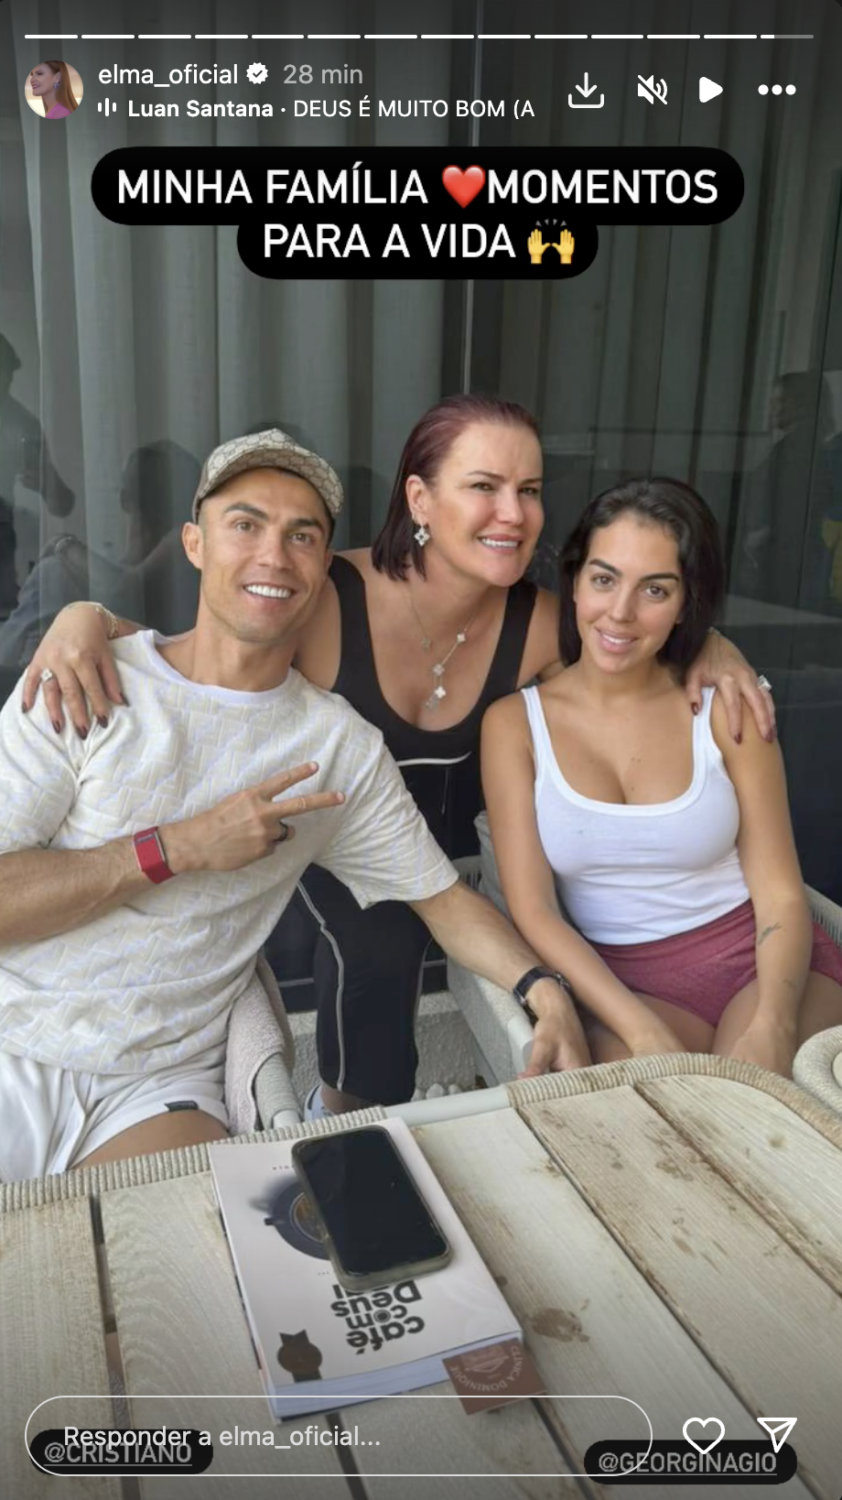 Resposta às notícias? Elma Aveiro partilha foto com Georgina Rodríguez e Cristiano Ronaldo: &#8220;Amor, paz e união&#8221;